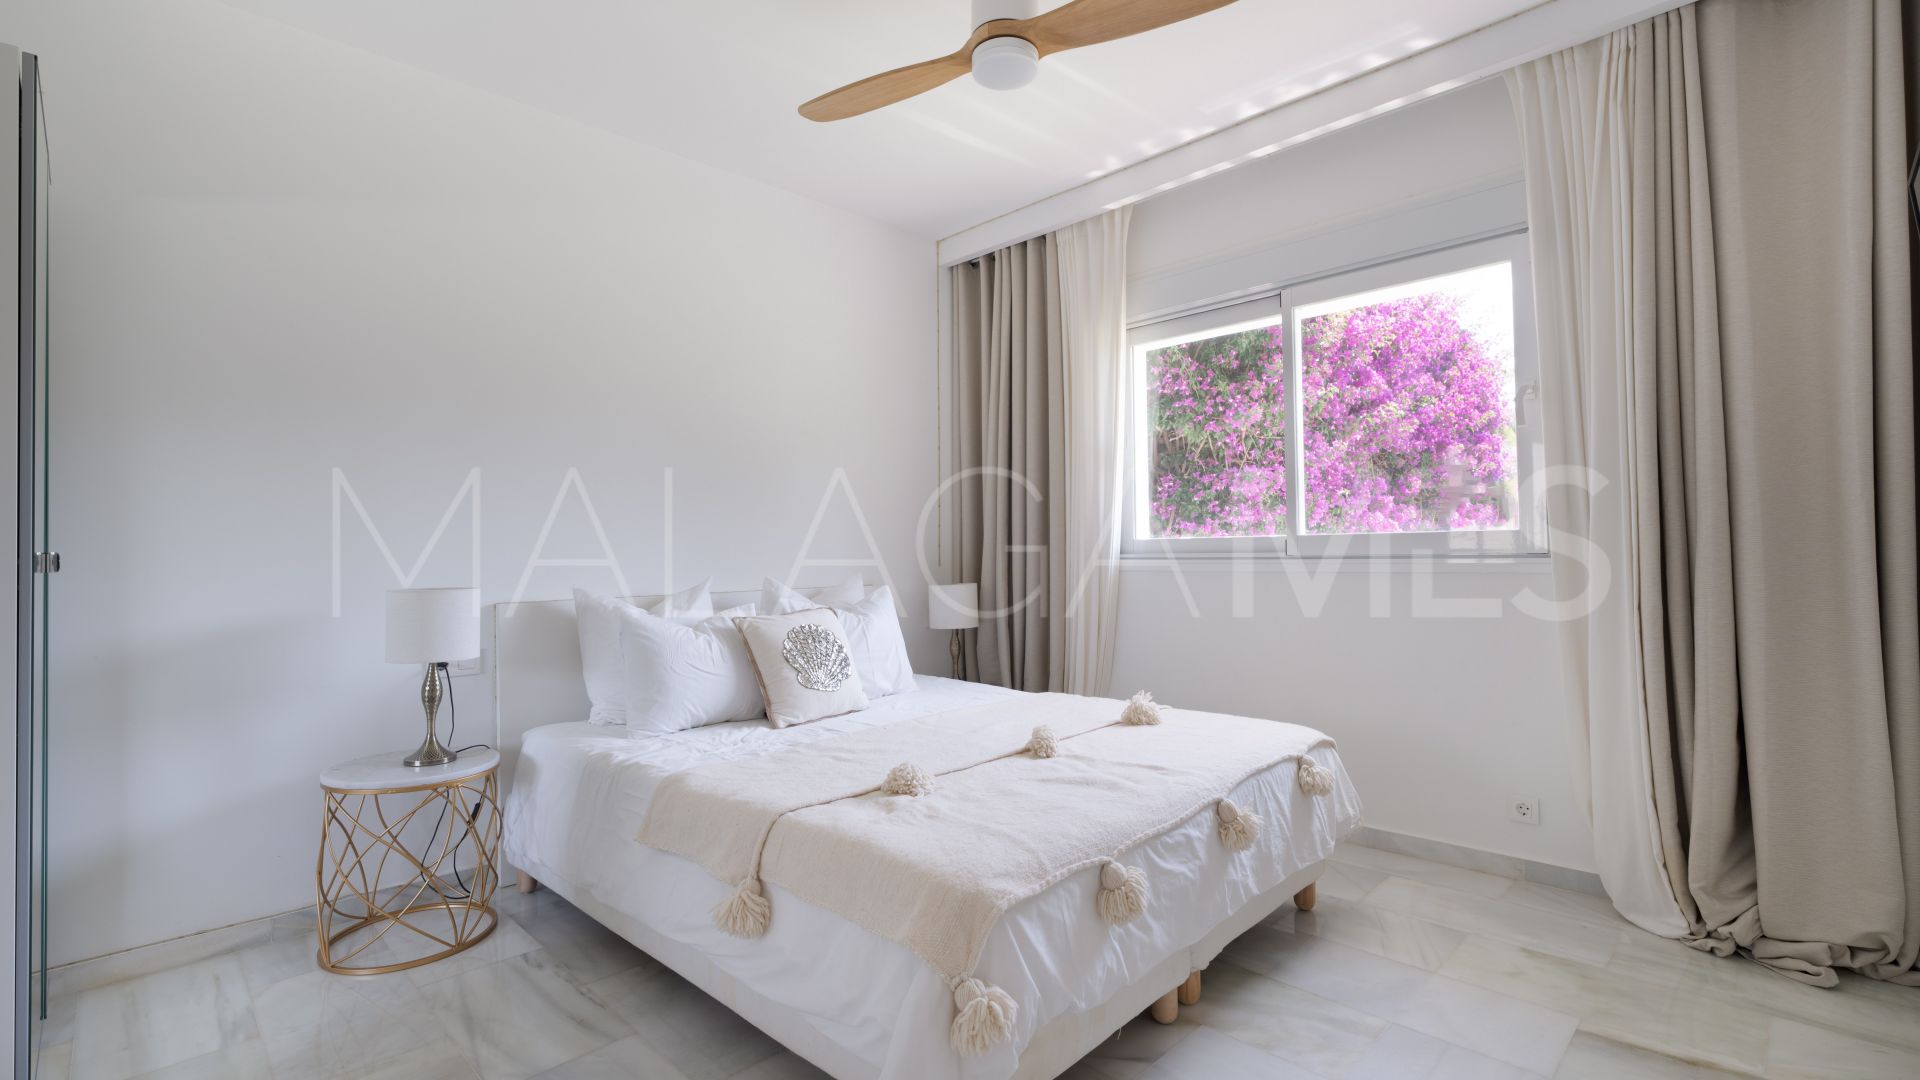 Villa with 5 bedrooms for sale in Marbella Este